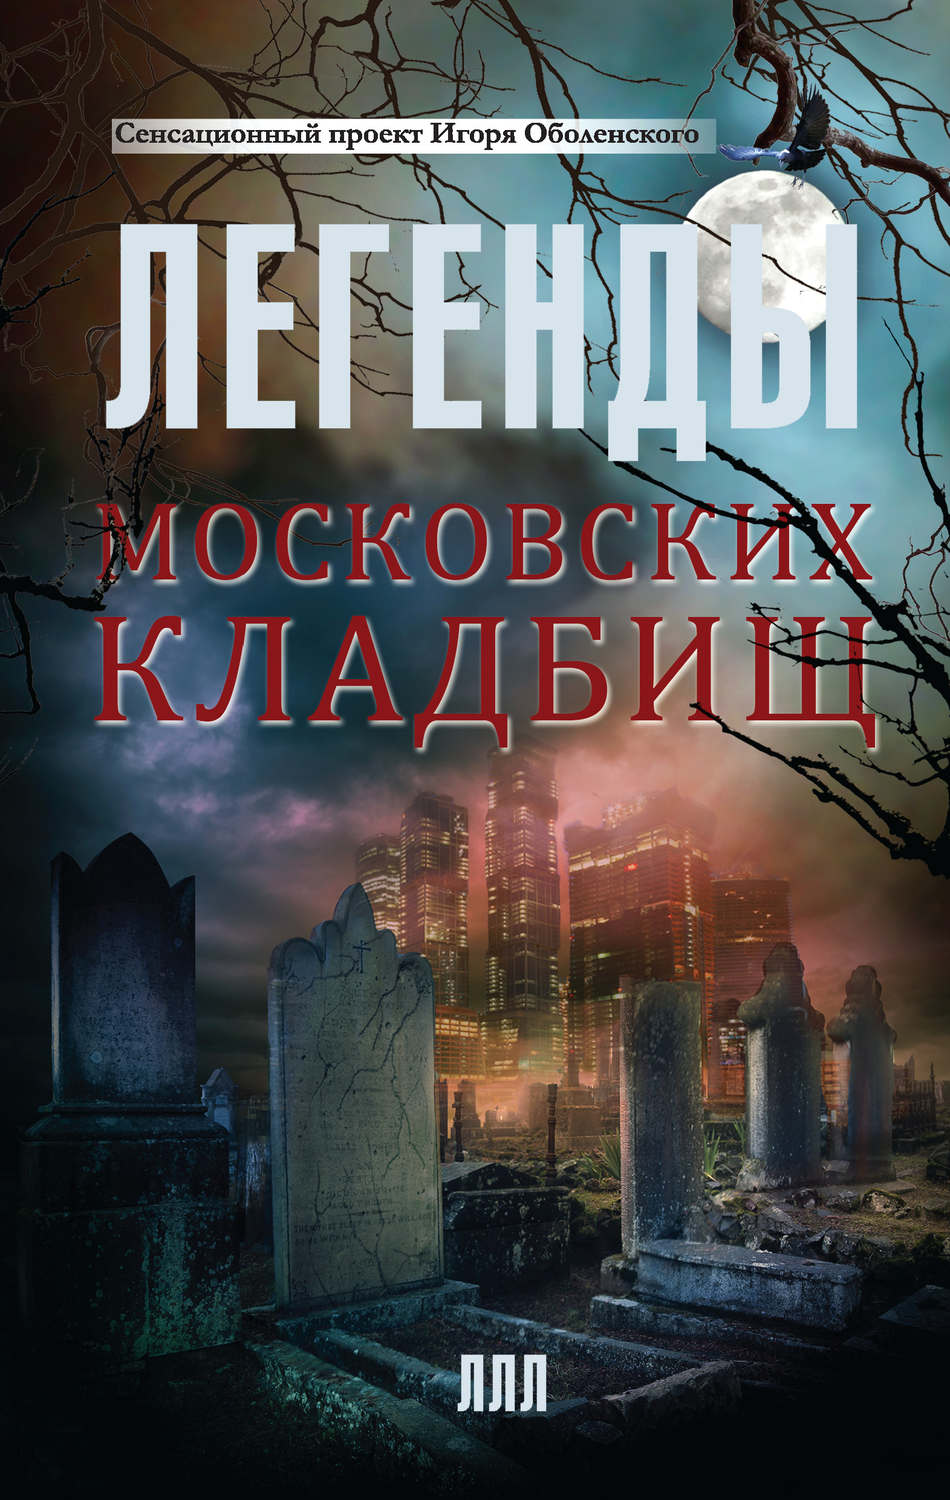 Легенды московских кладбищ скачать бесплатно fb2